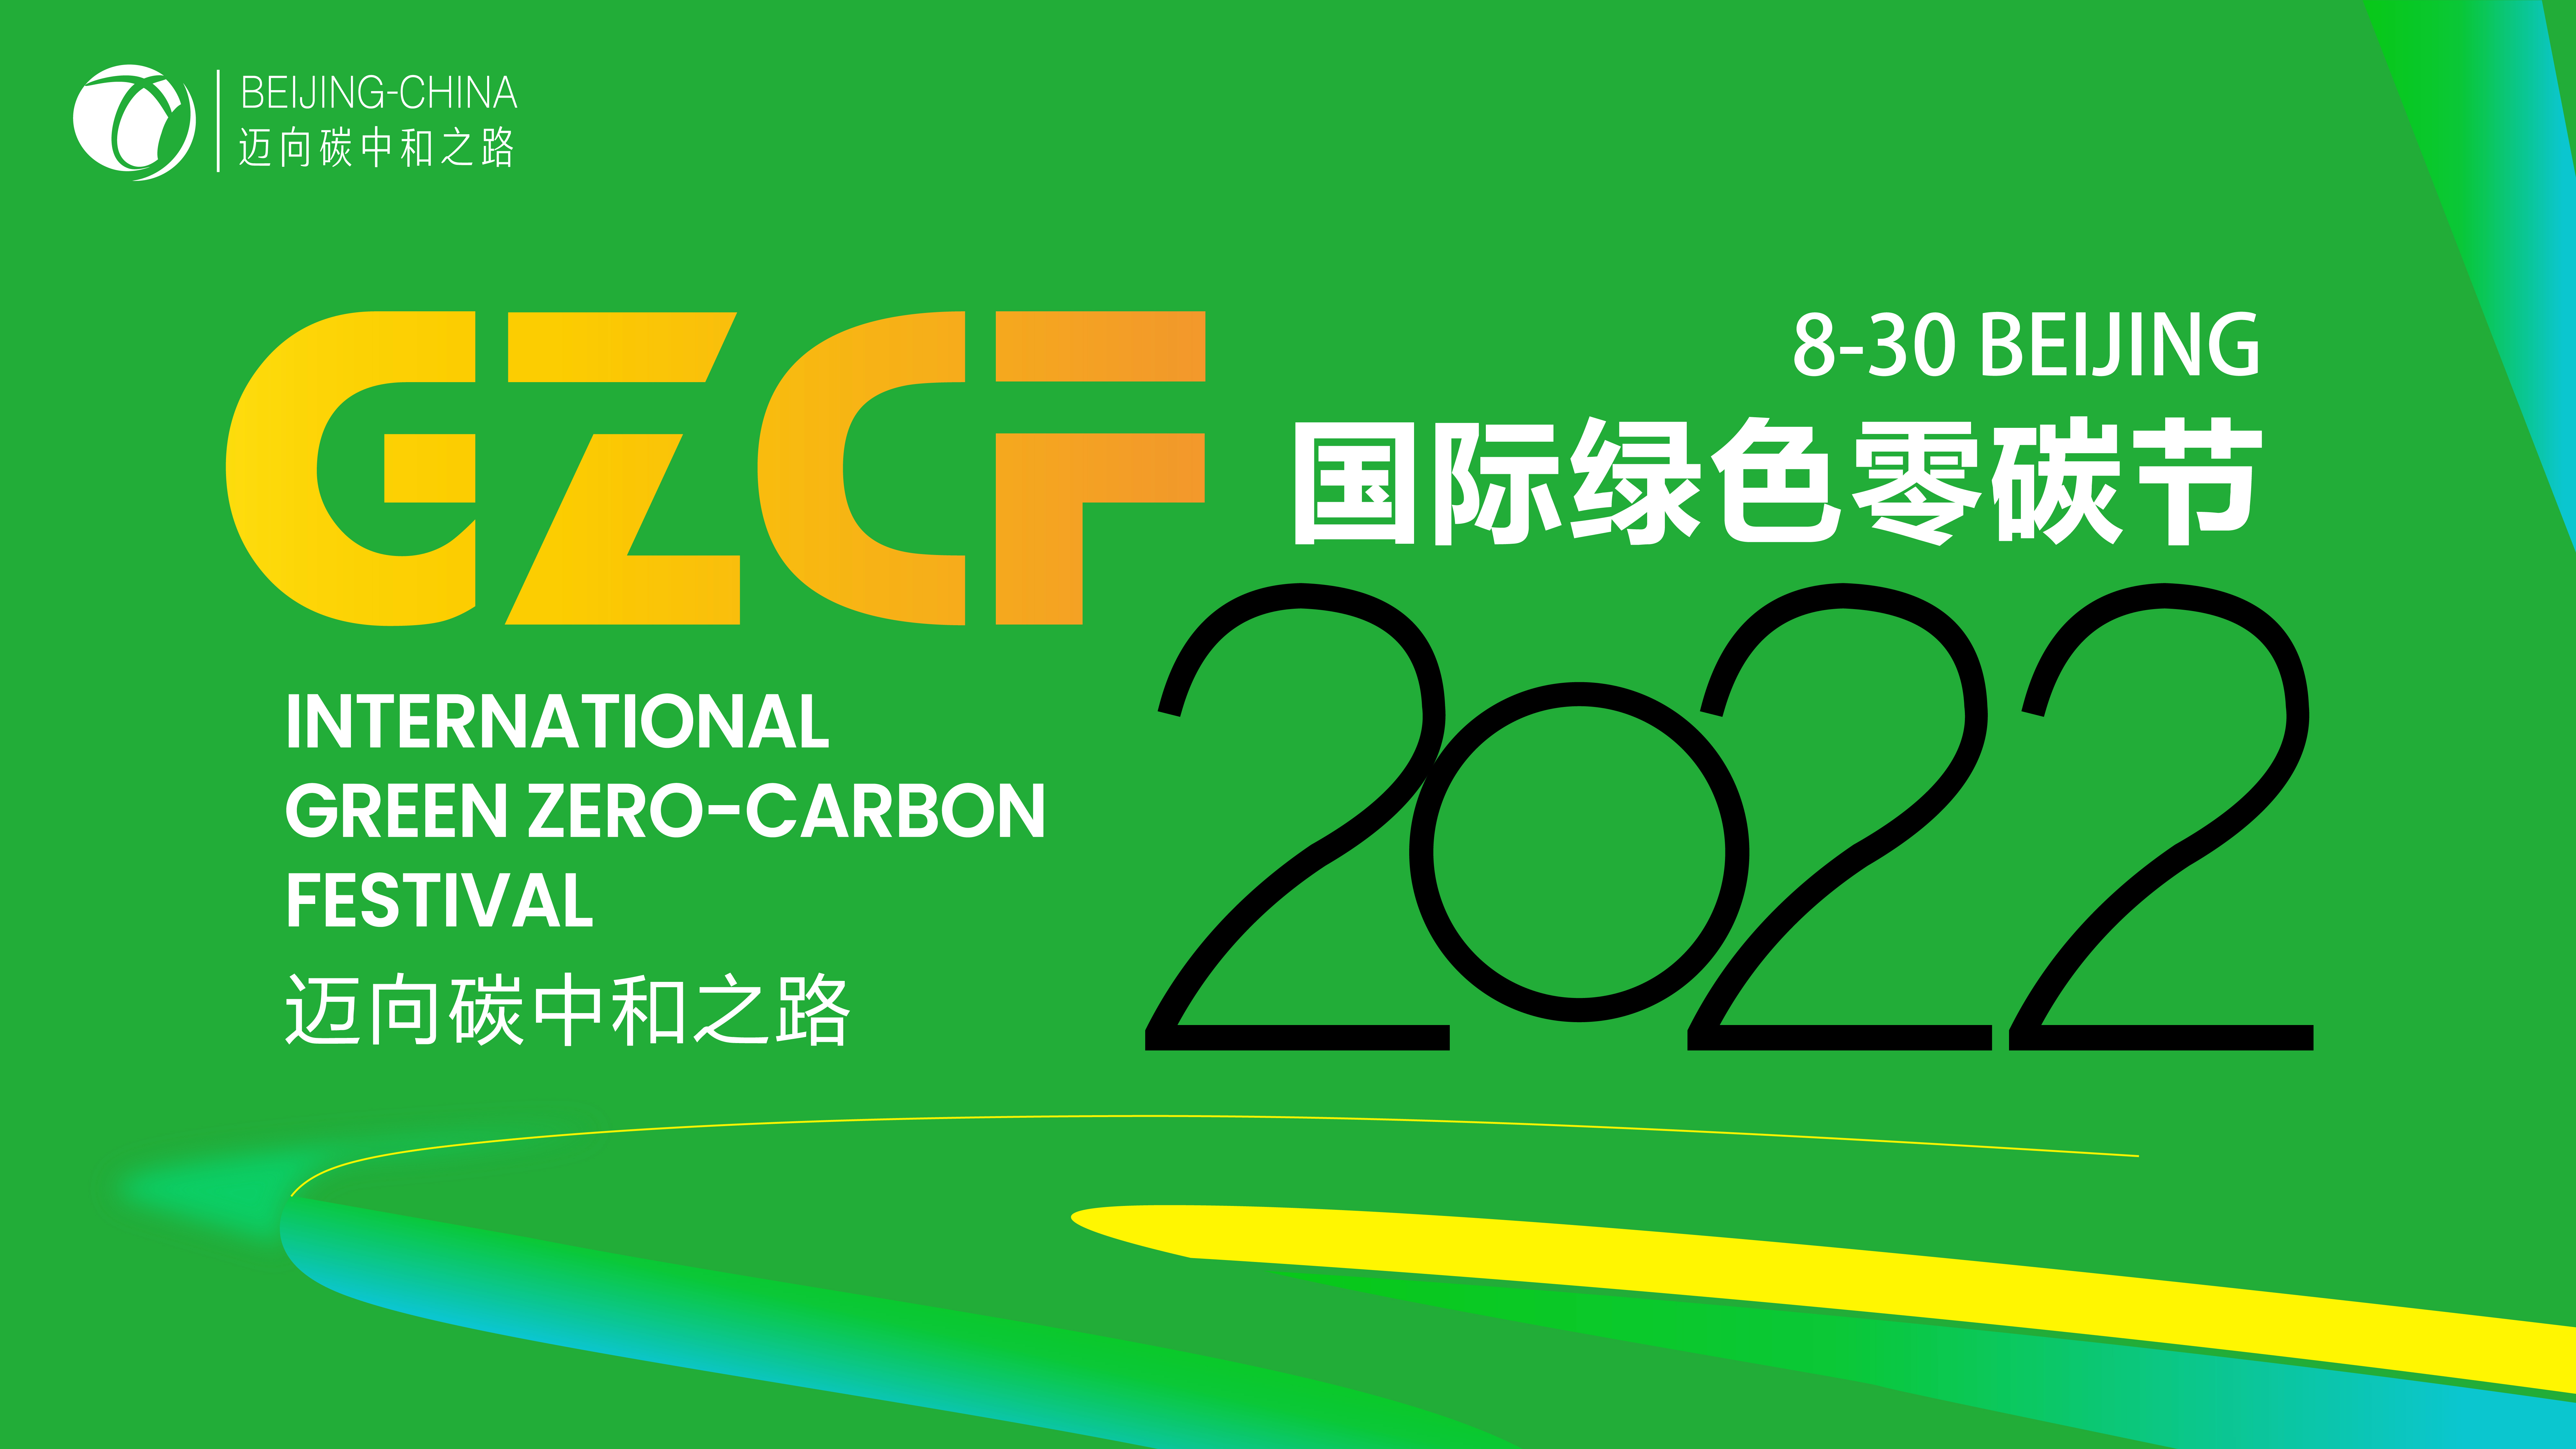 2022國際綠色零碳節將籌備舉行，邁向碳中和之路